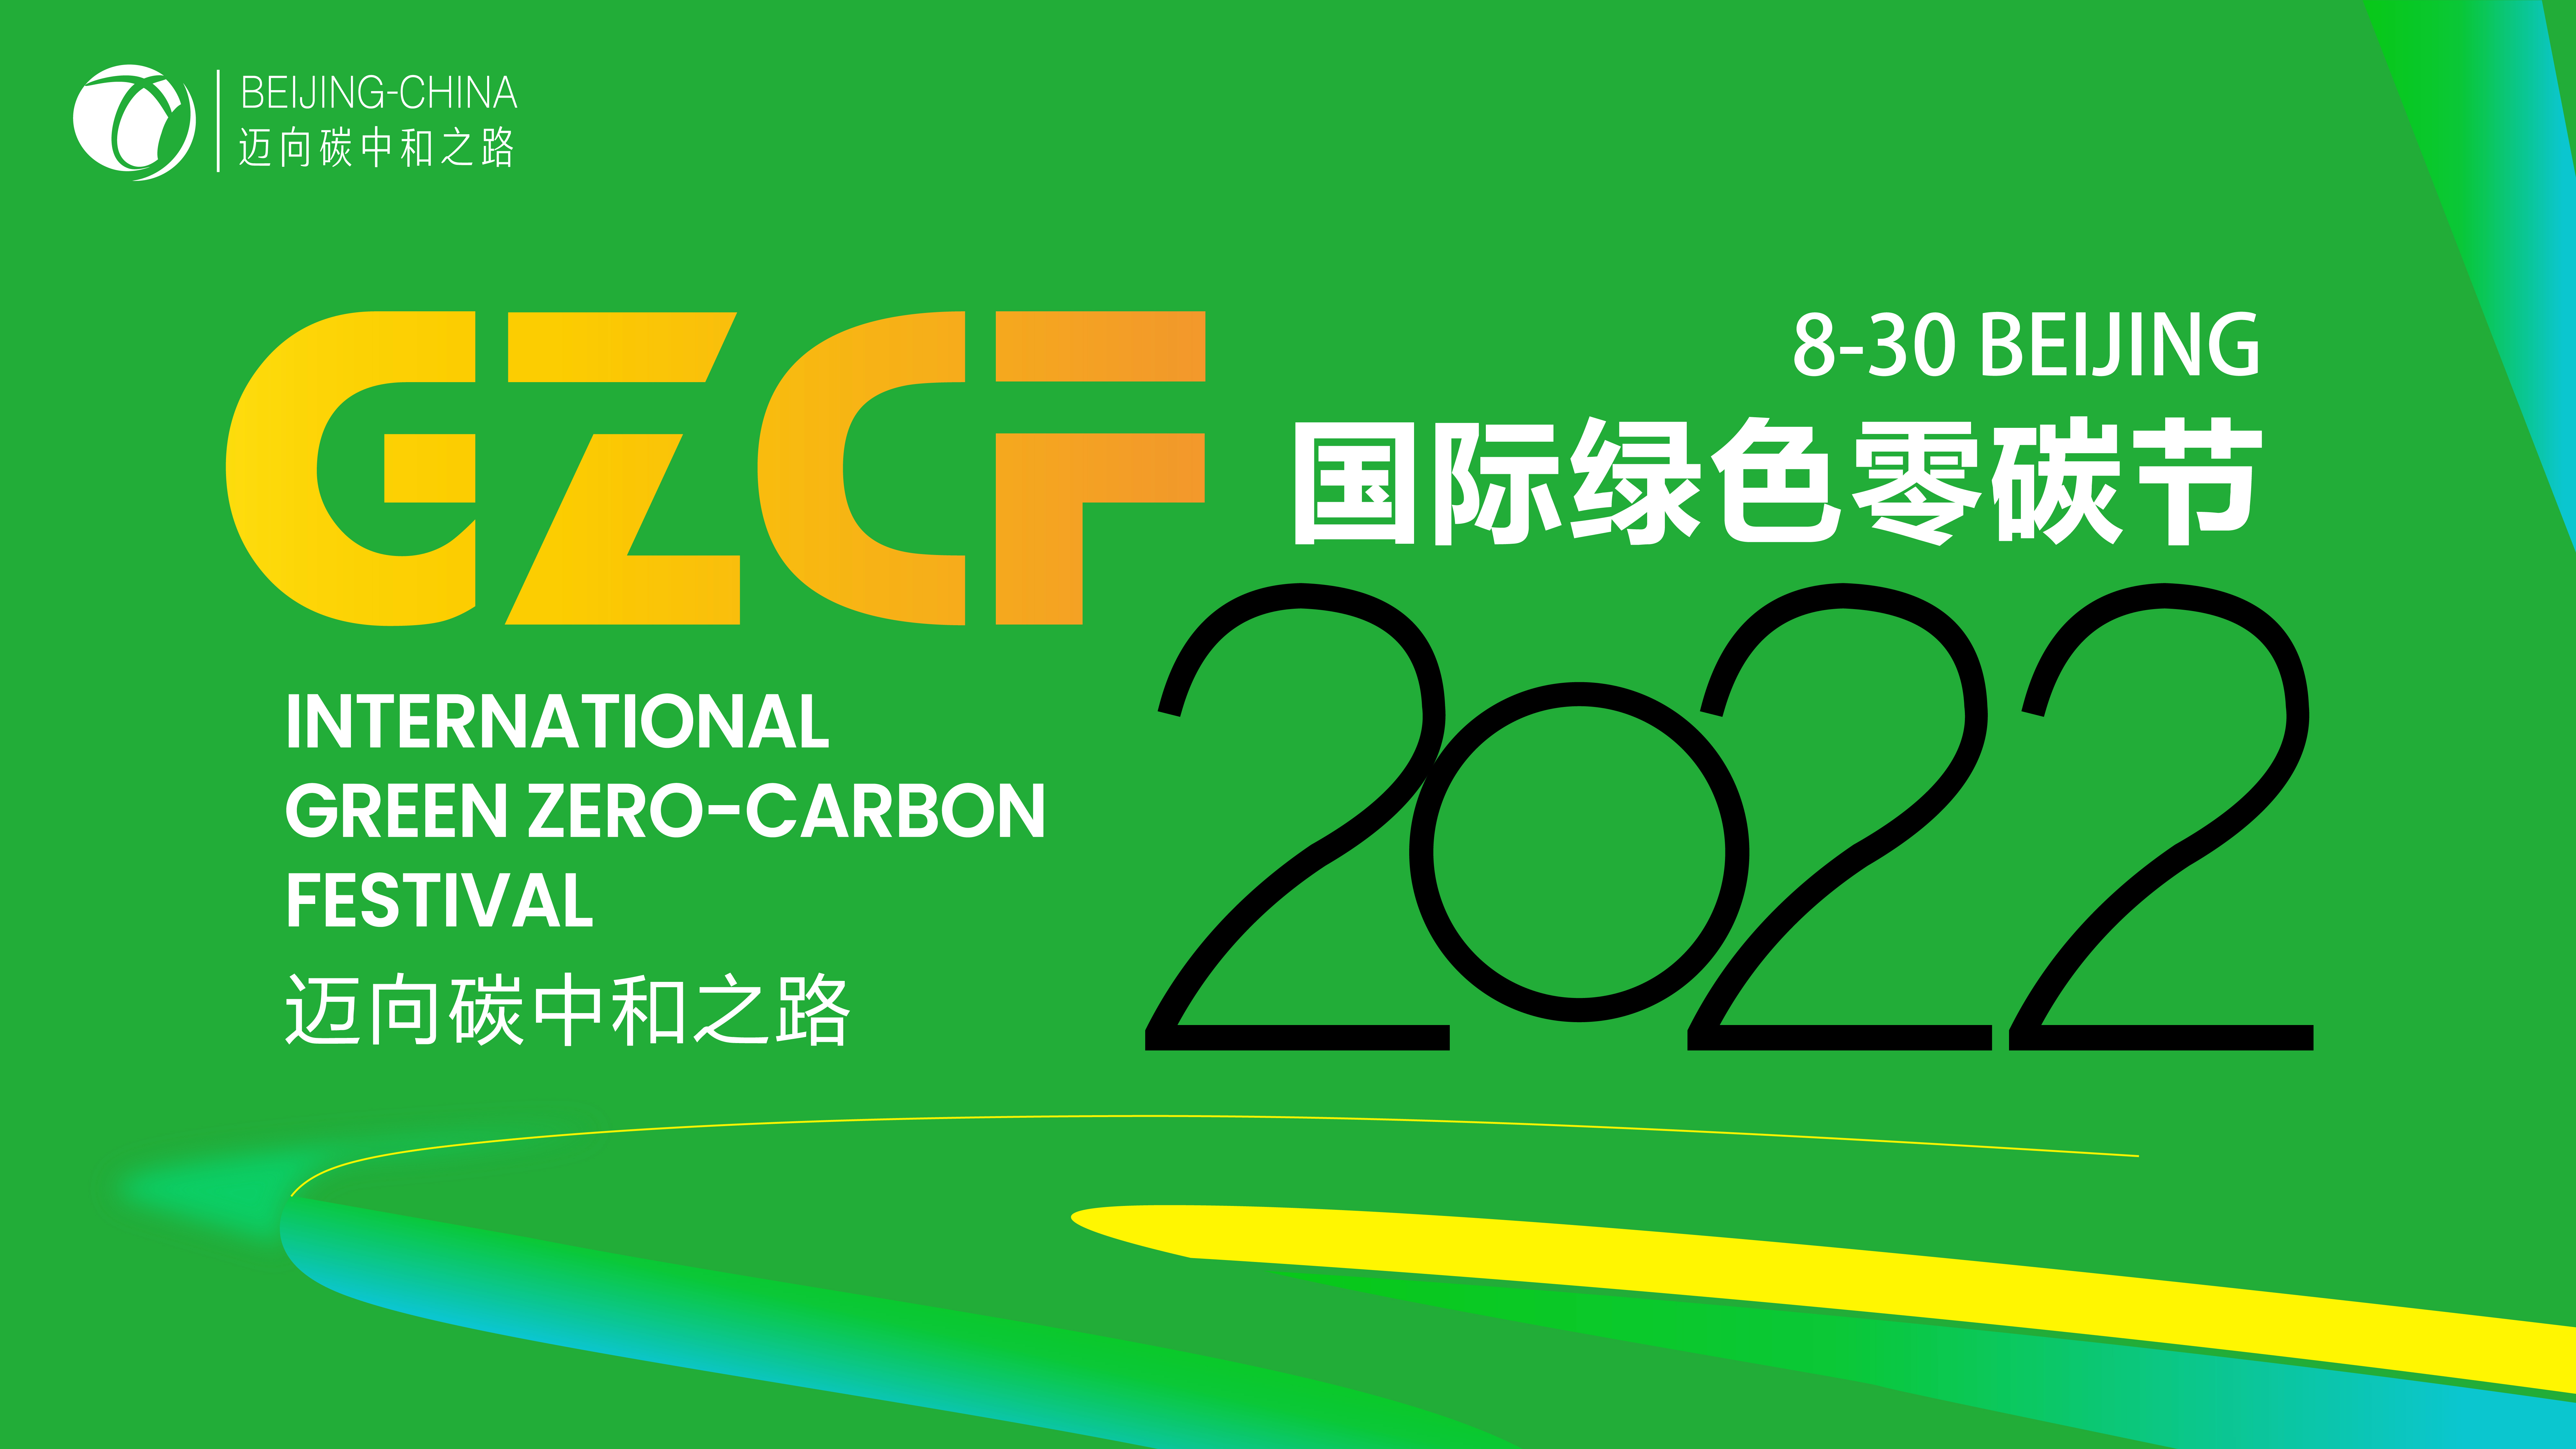 2022國際綠色零碳節將籌備舉行，邁向碳中和之路